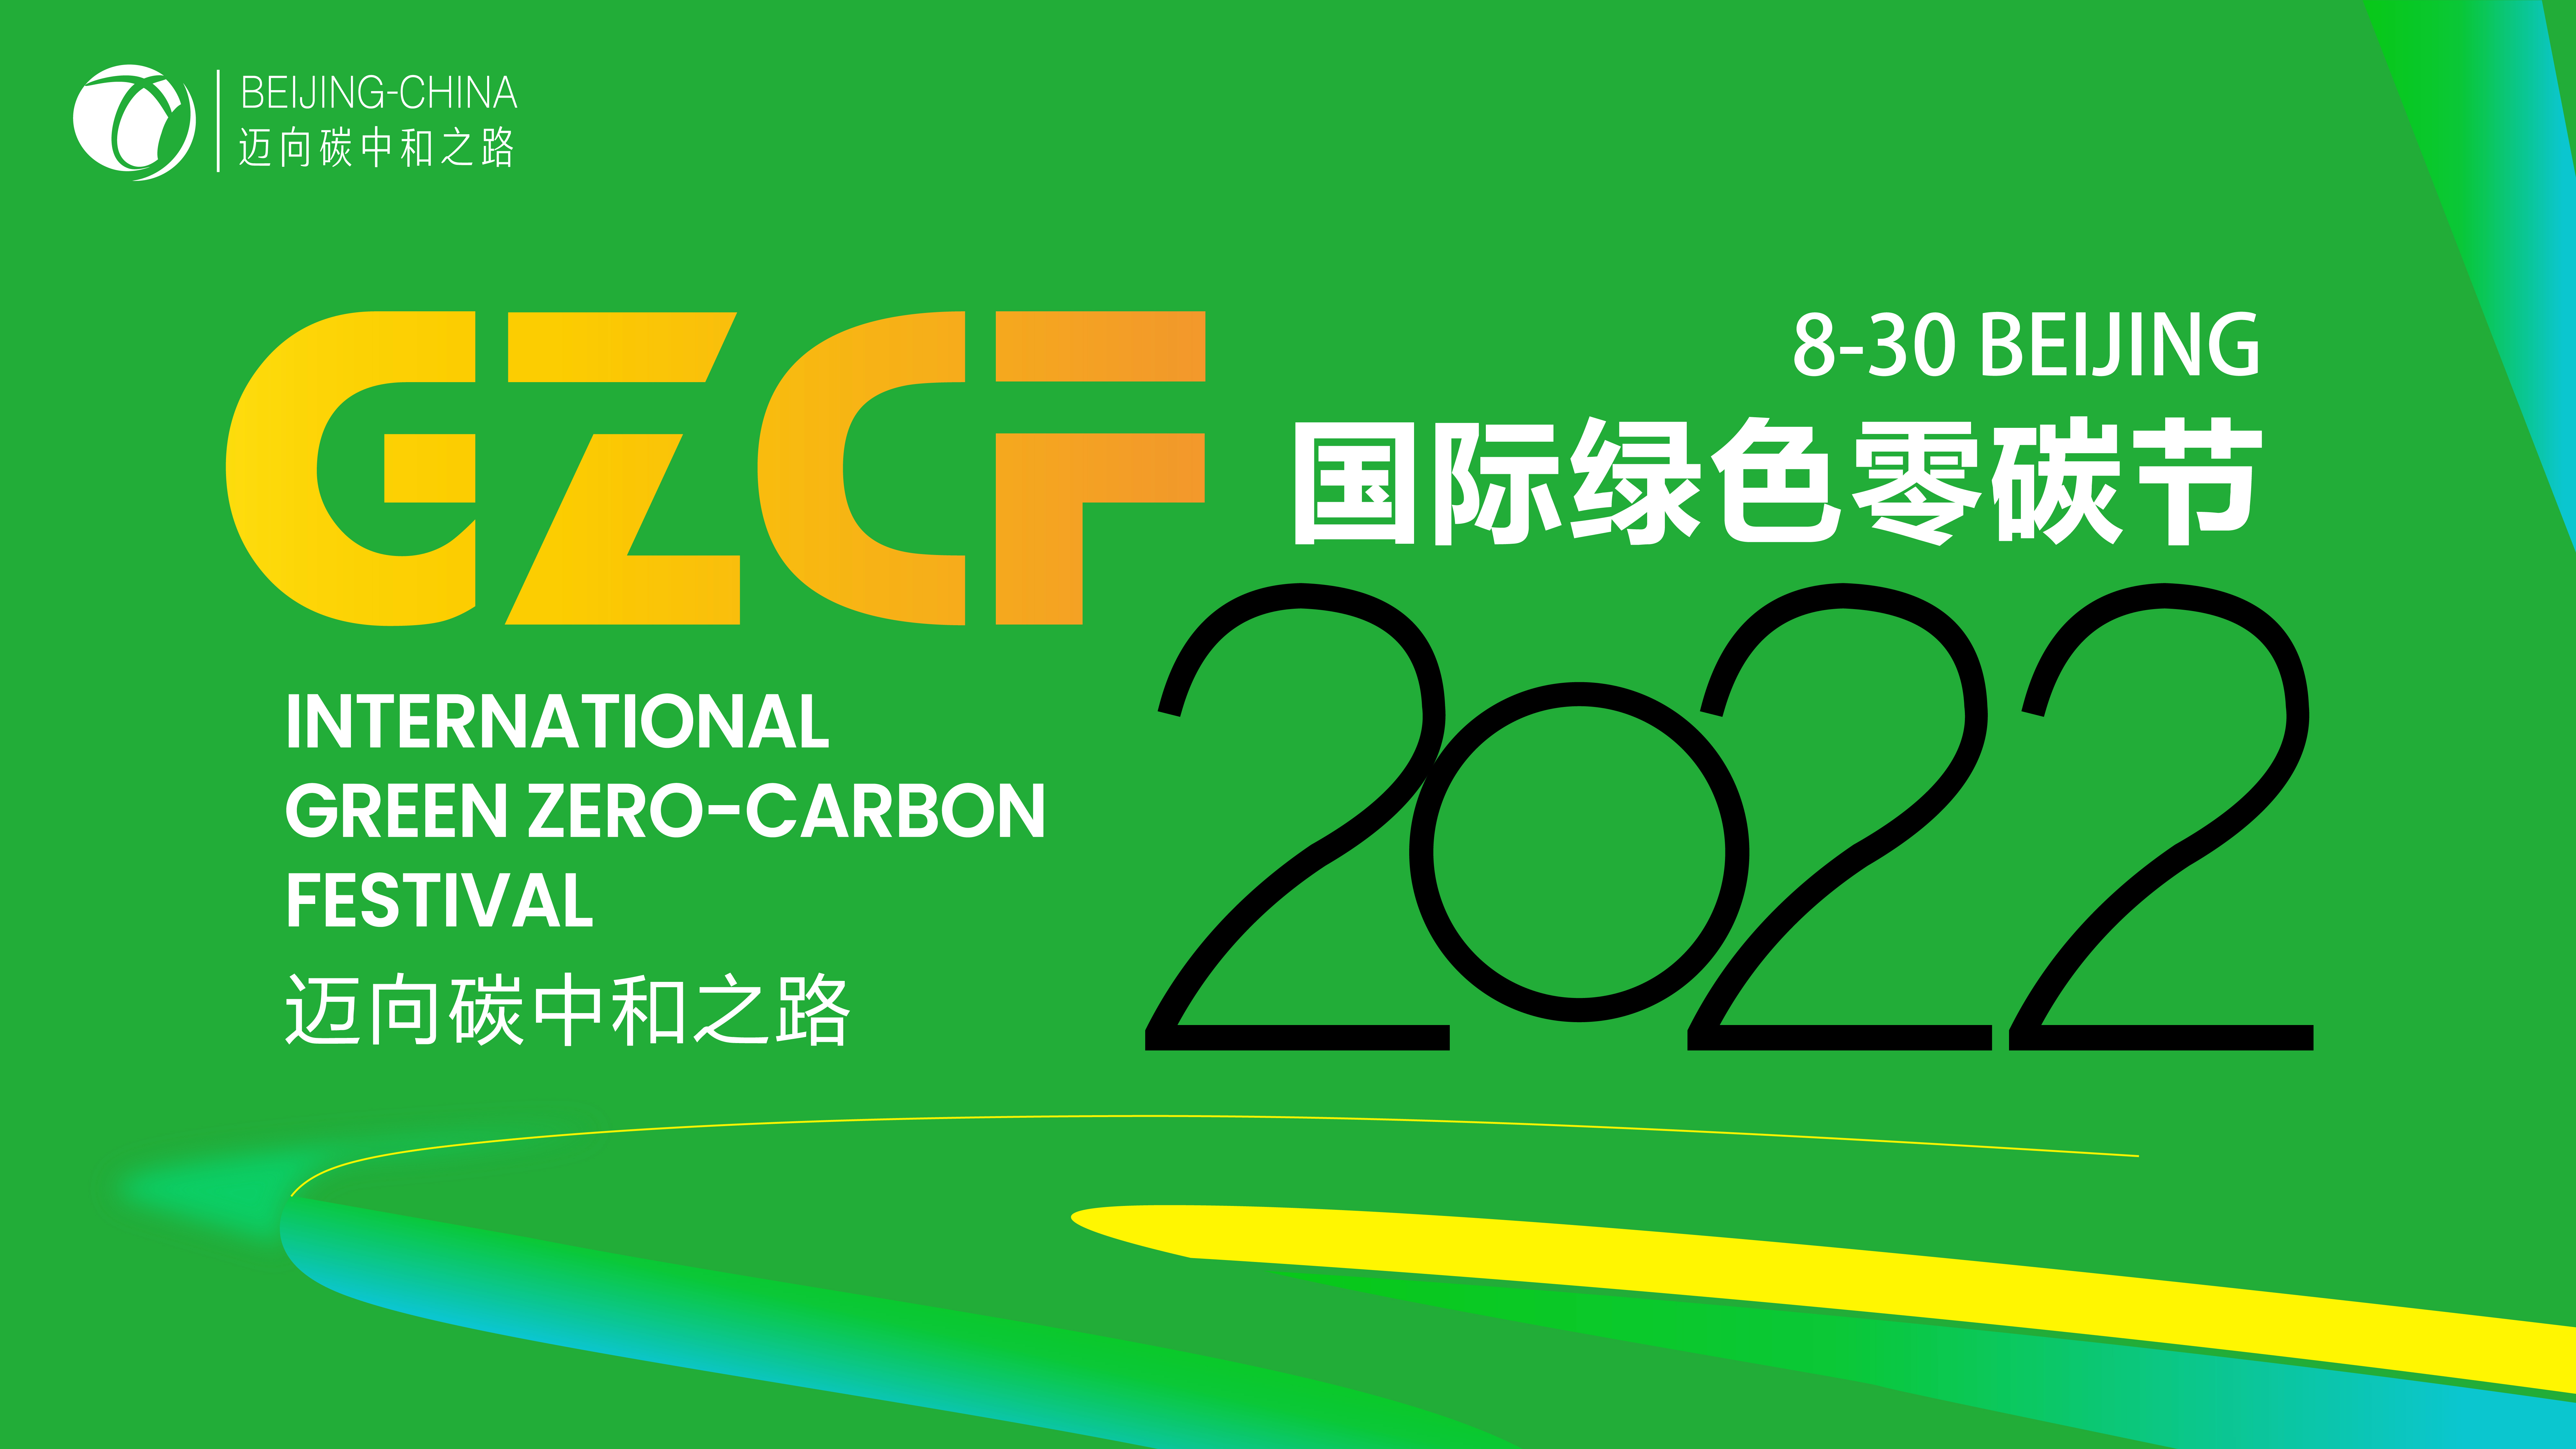 2022國際綠色零碳節將籌備舉行，邁向碳中和之路